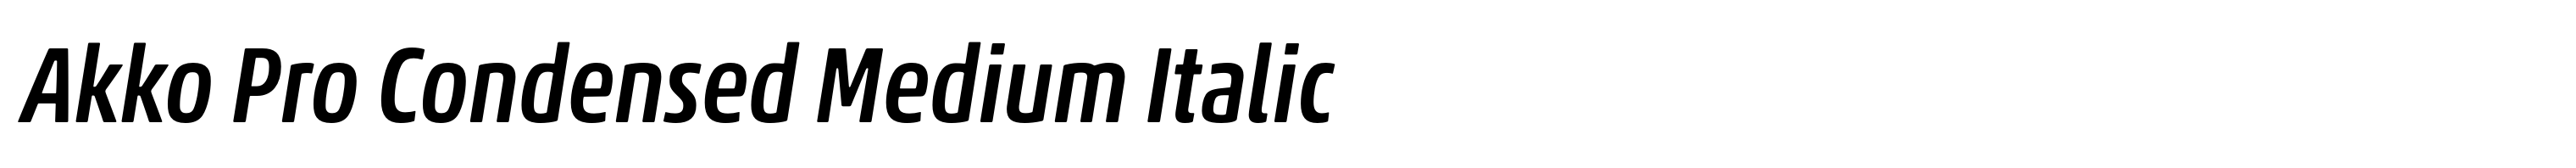 Akko Pro Condensed Medium Italic